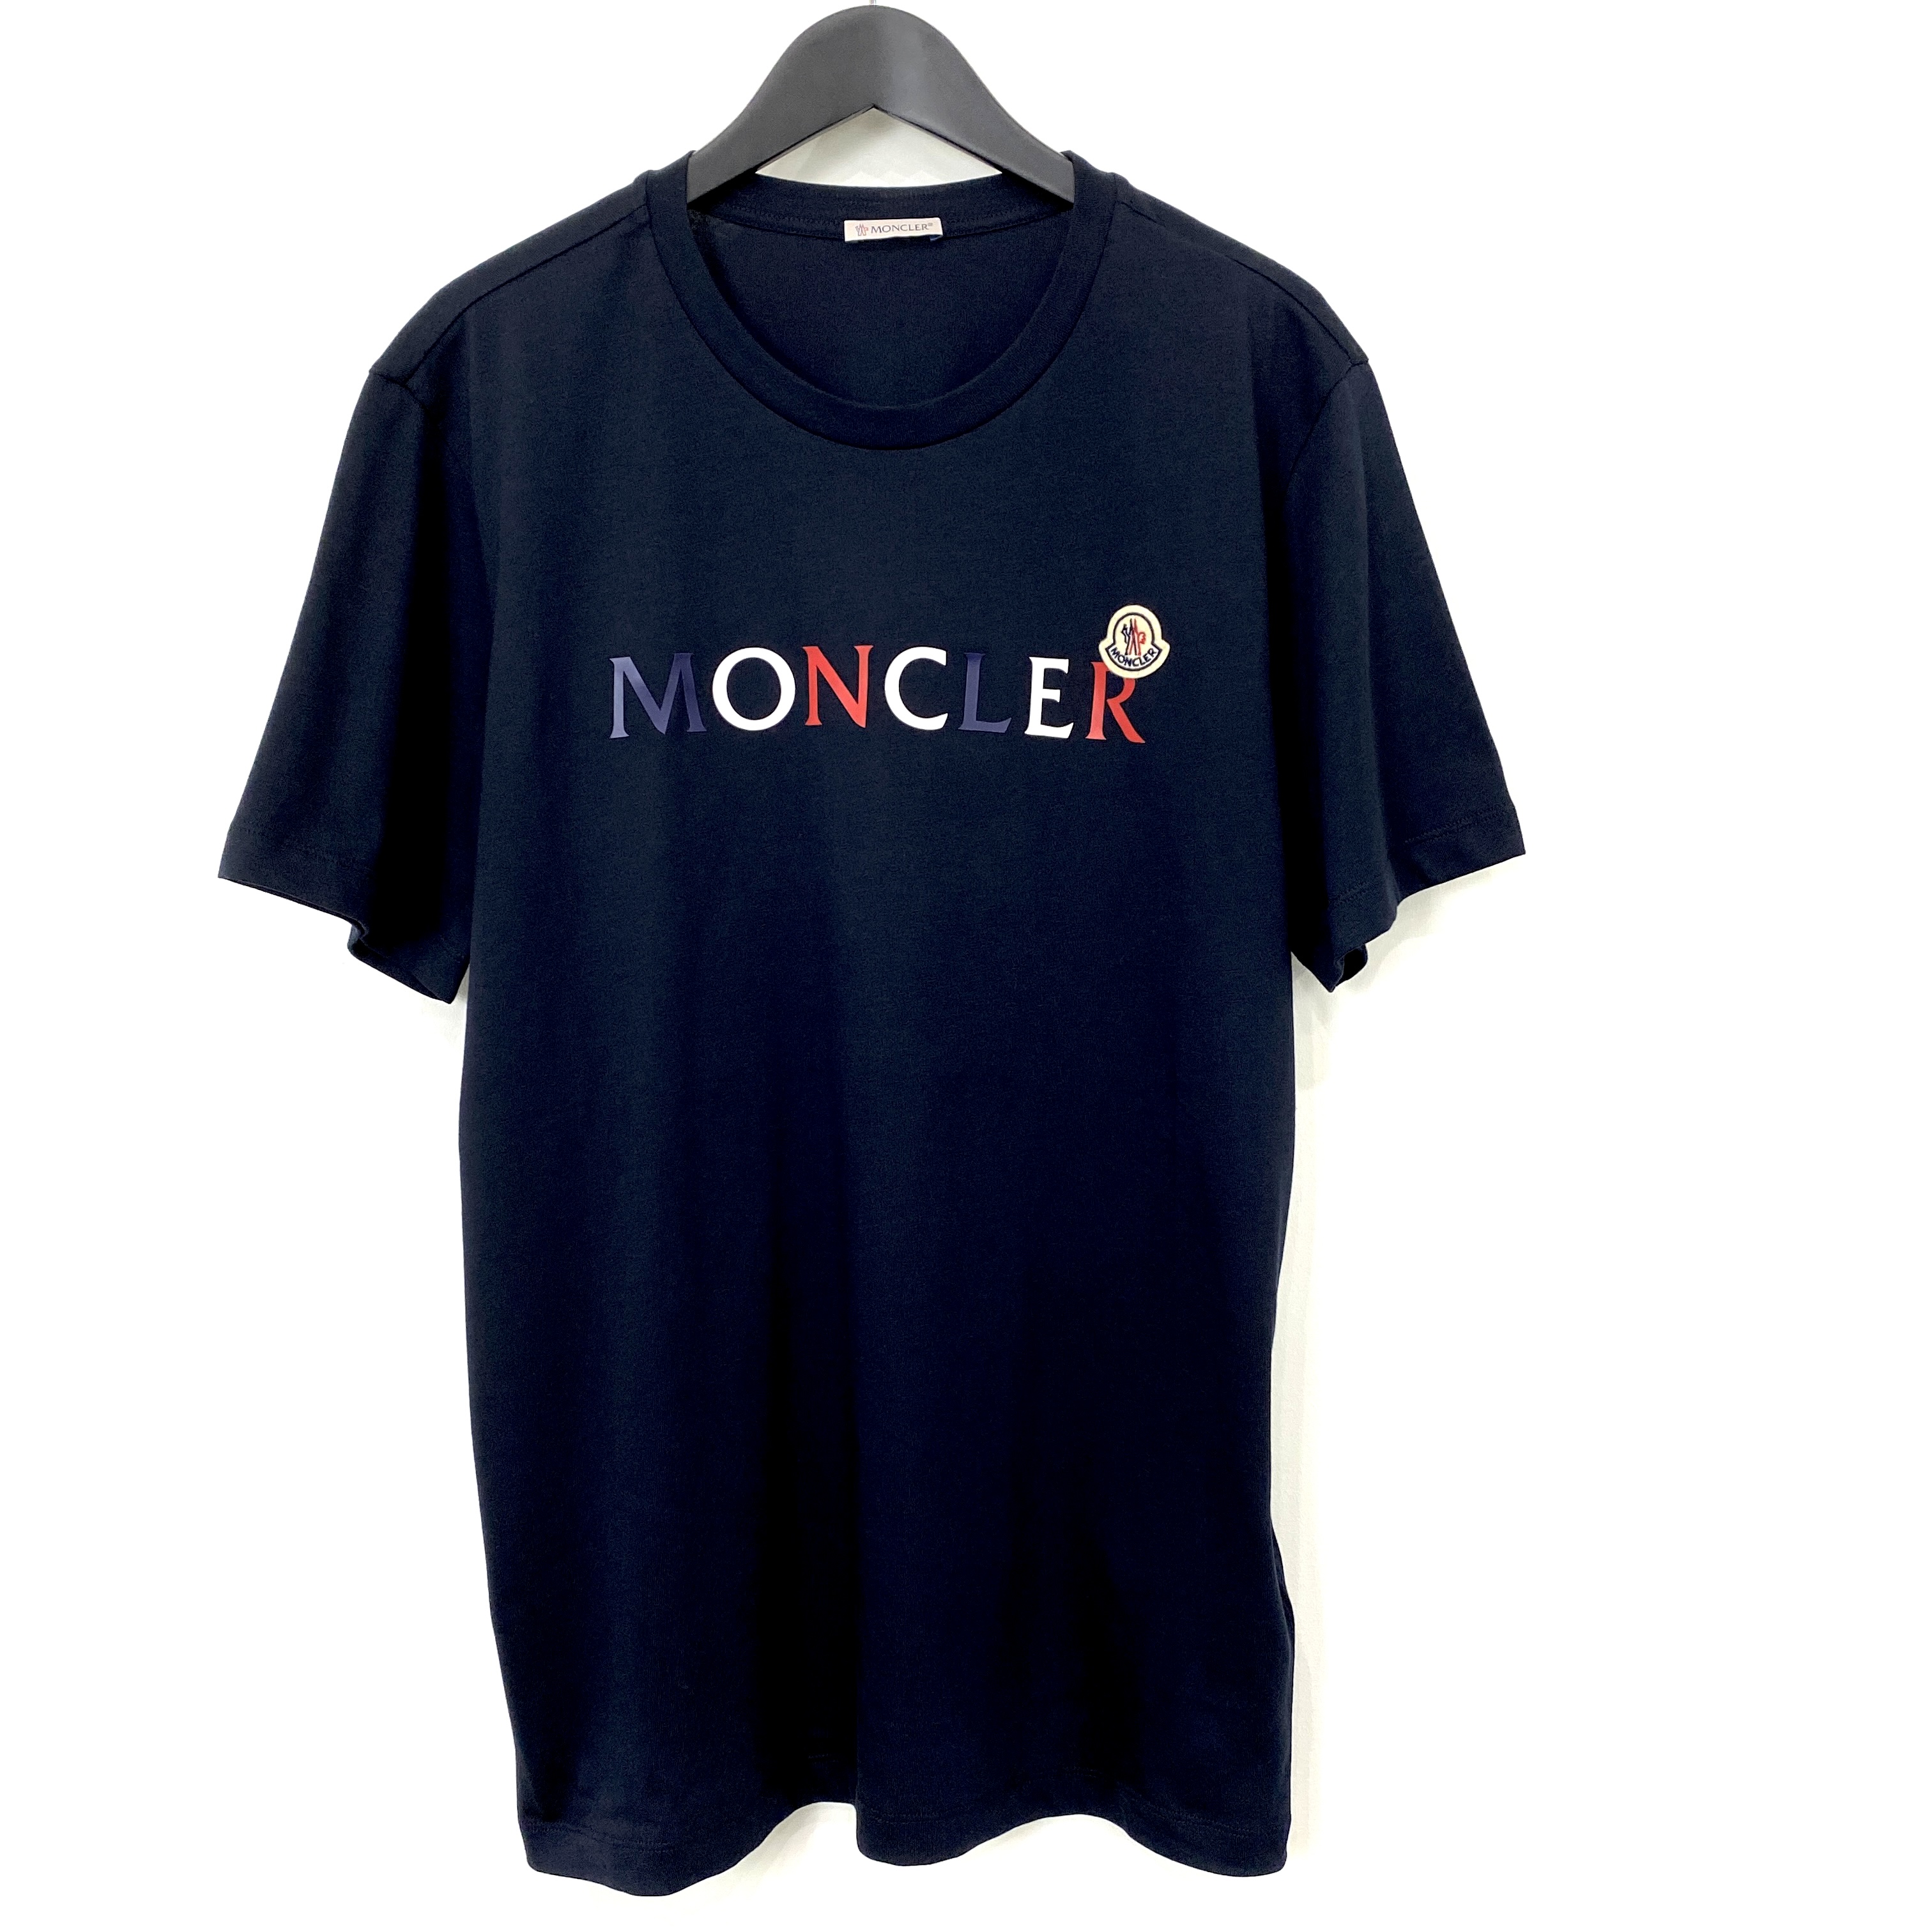 【MONCLER】モンクレール /  LOGO T-SHIRT / NAVY / 半袖Tシャツ